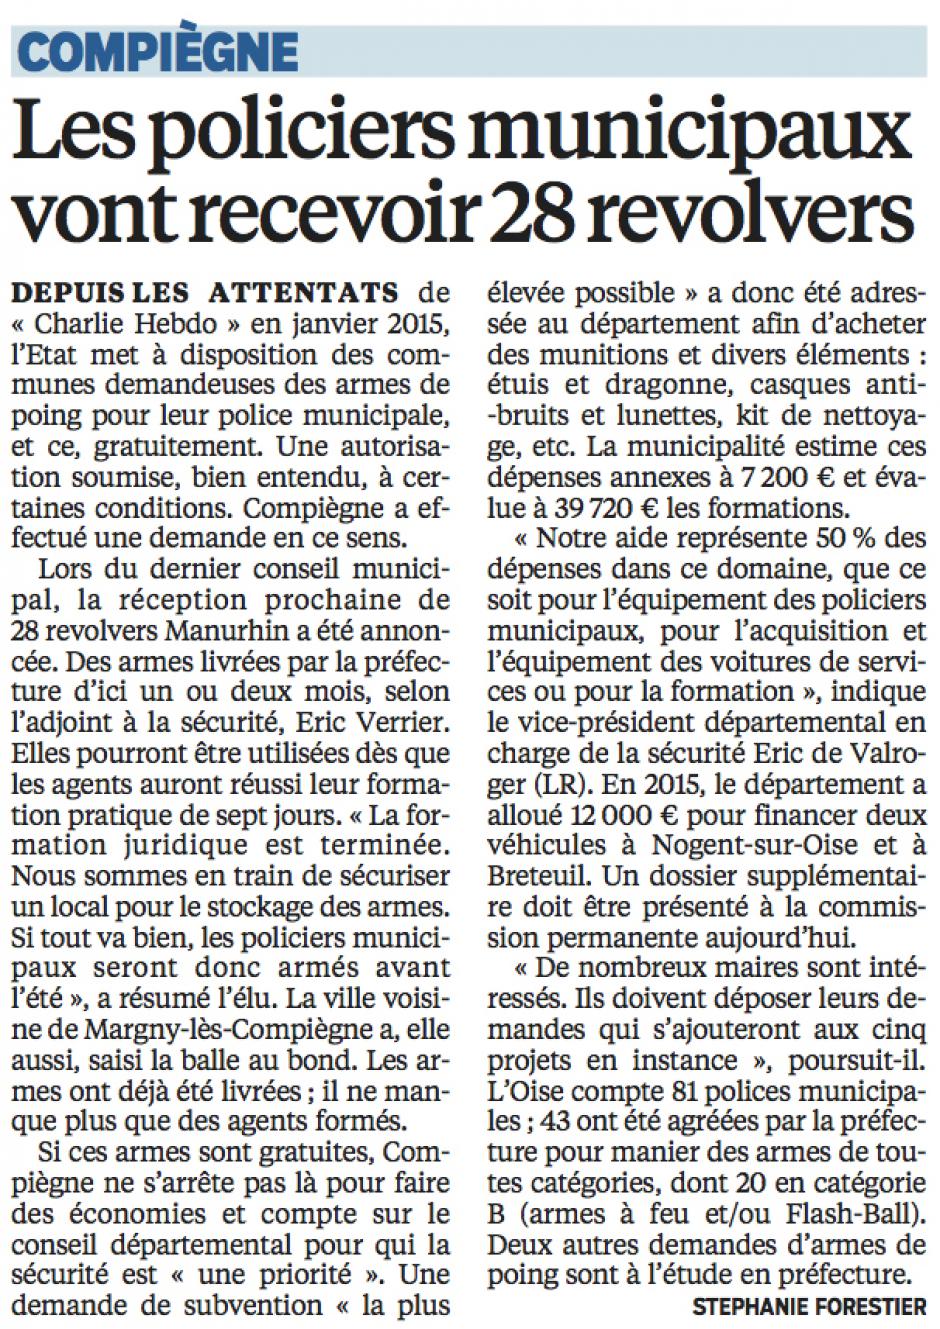 20160307-LeP-Compiègne-Les policiers municipaux vont recevoir 28 revolvers